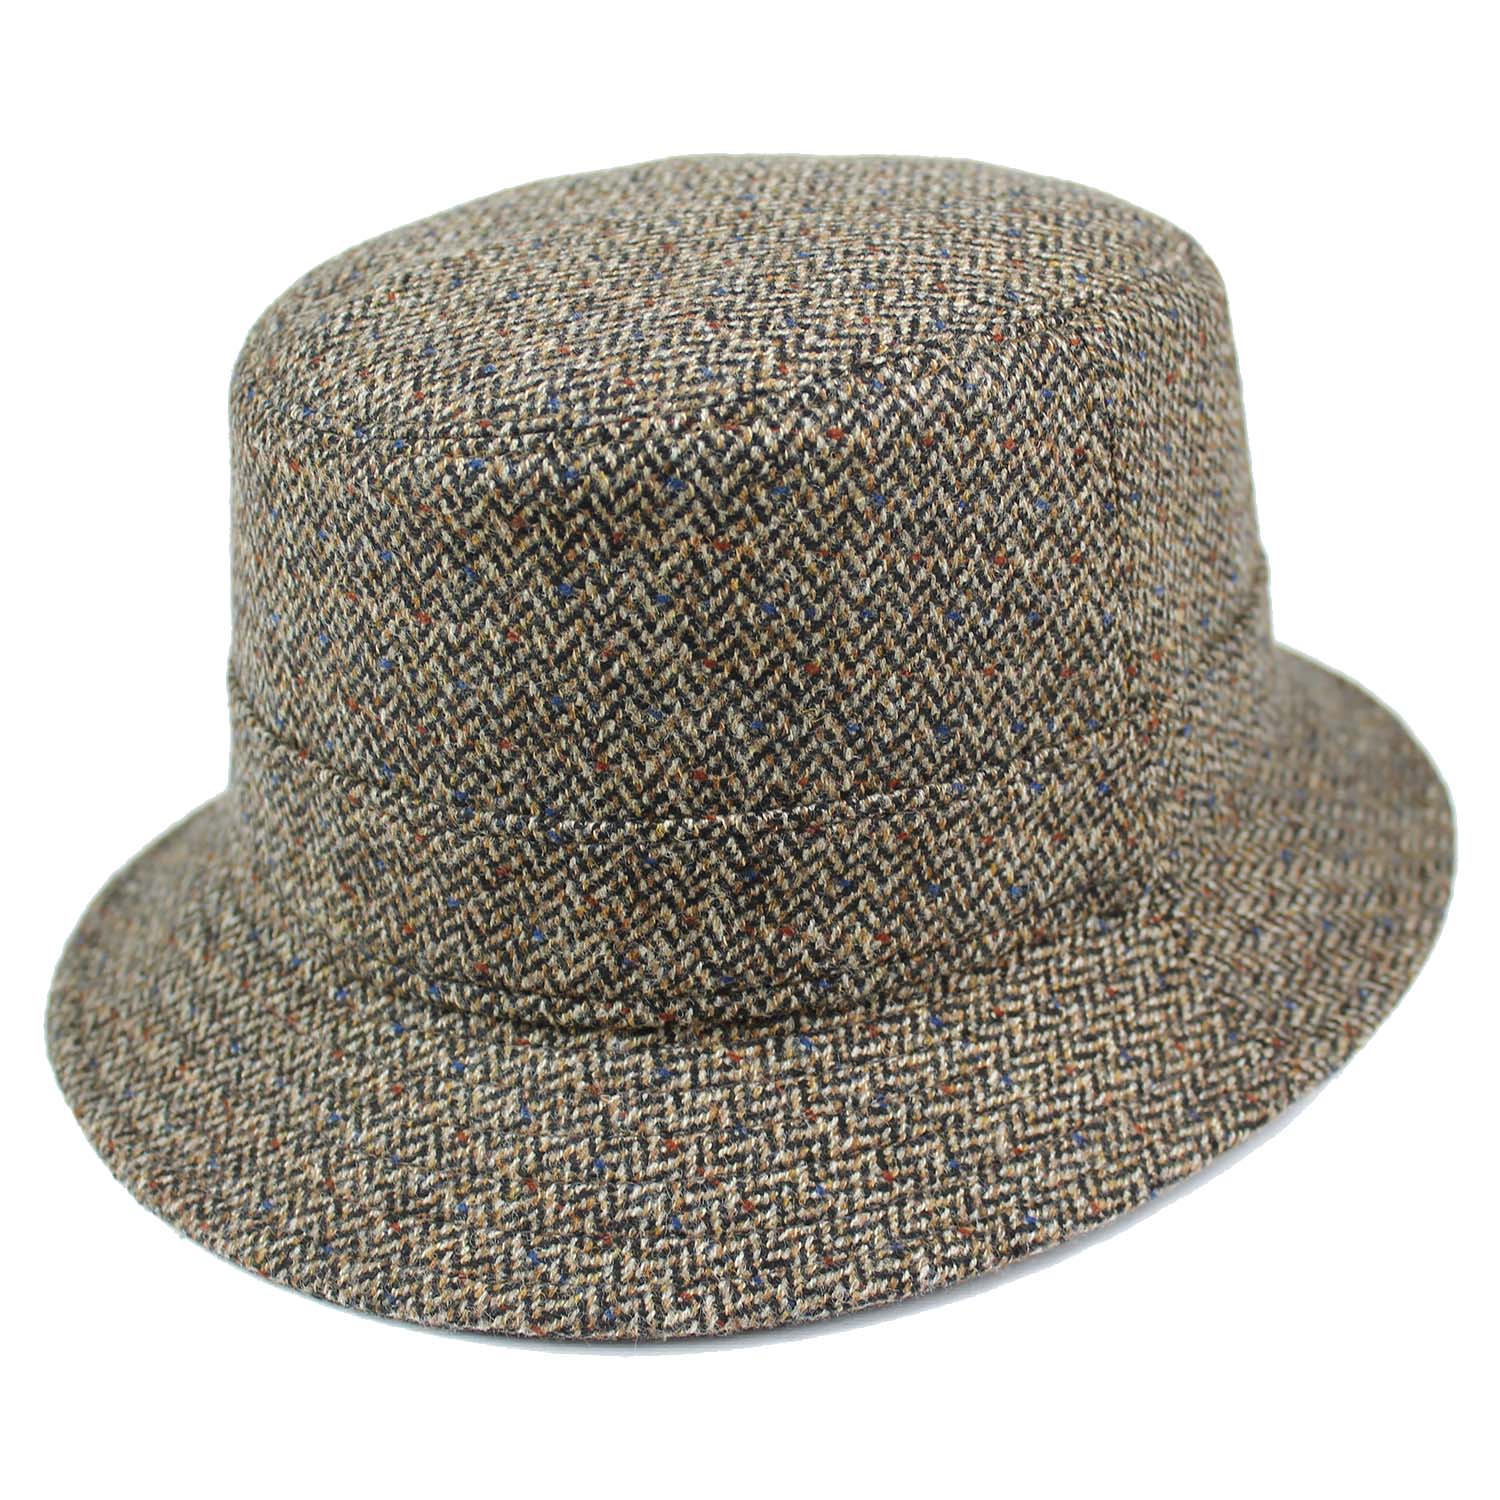 Cappello da pescatore - Bucket Hat waterproof - Lana e Cashmere - Tonalità  marrone